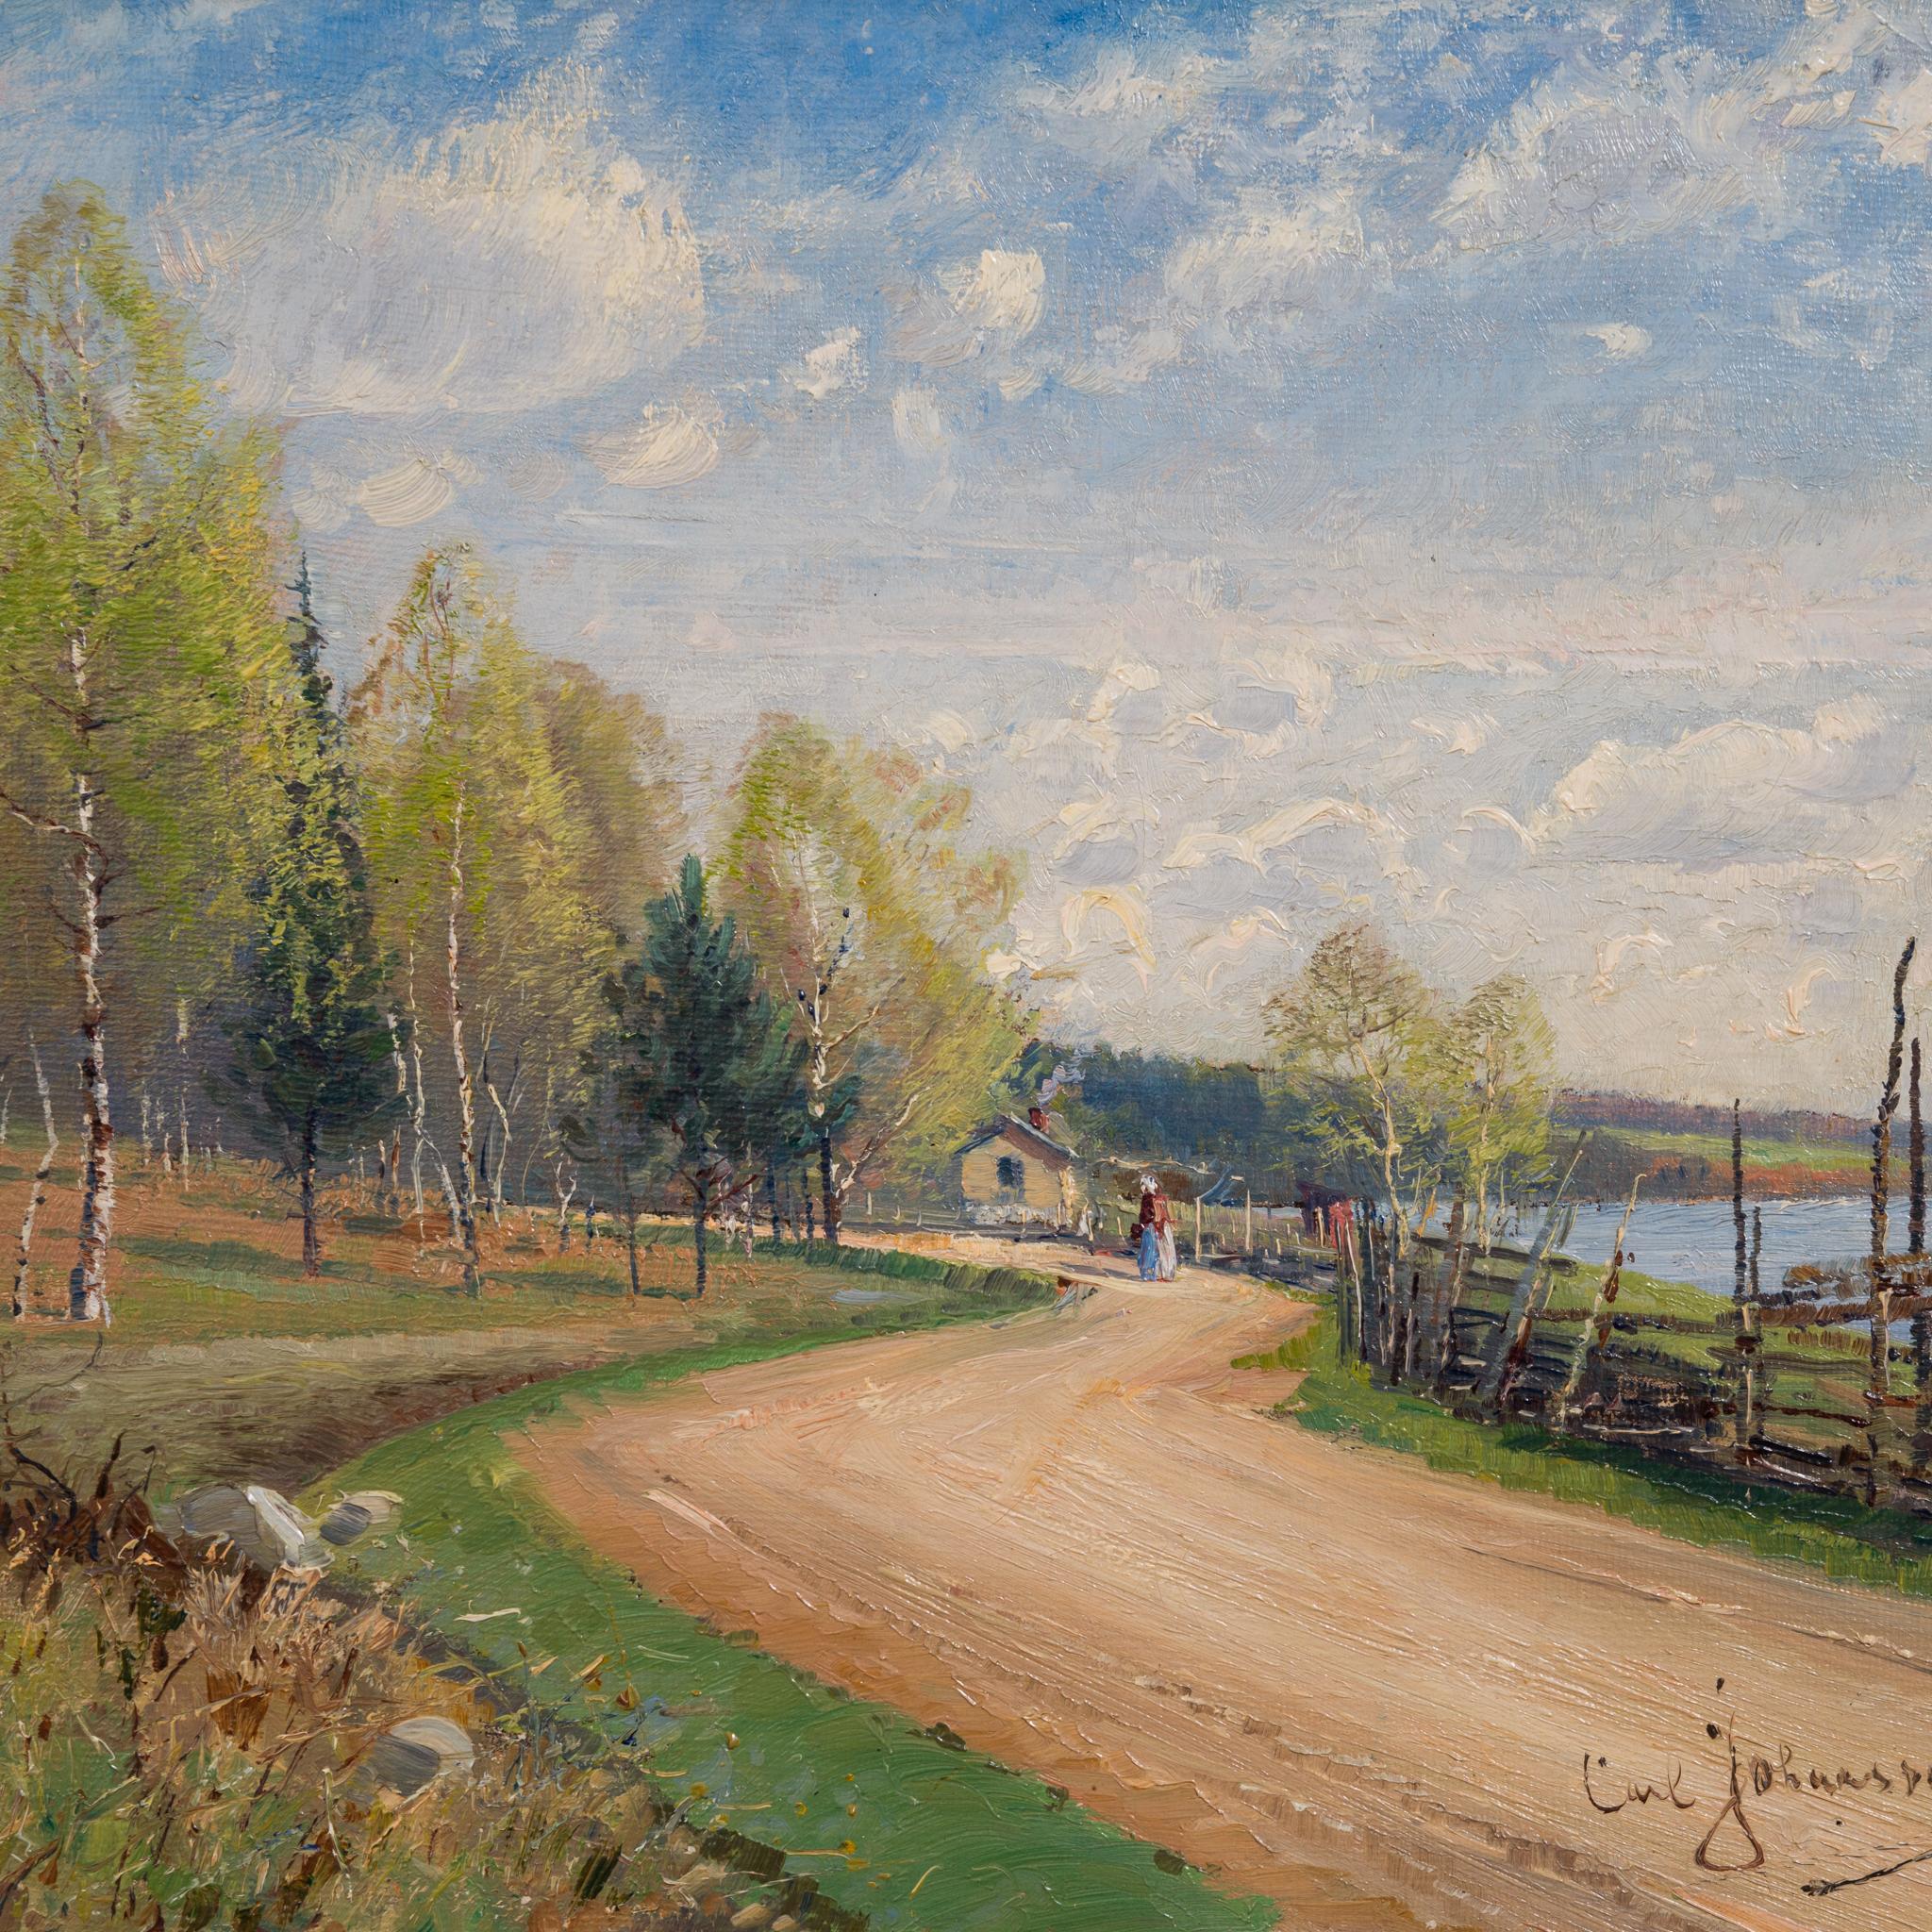 Paysage d'été impressionniste avec peinture de route peint en 1889 - Painting de Carl Johansson 